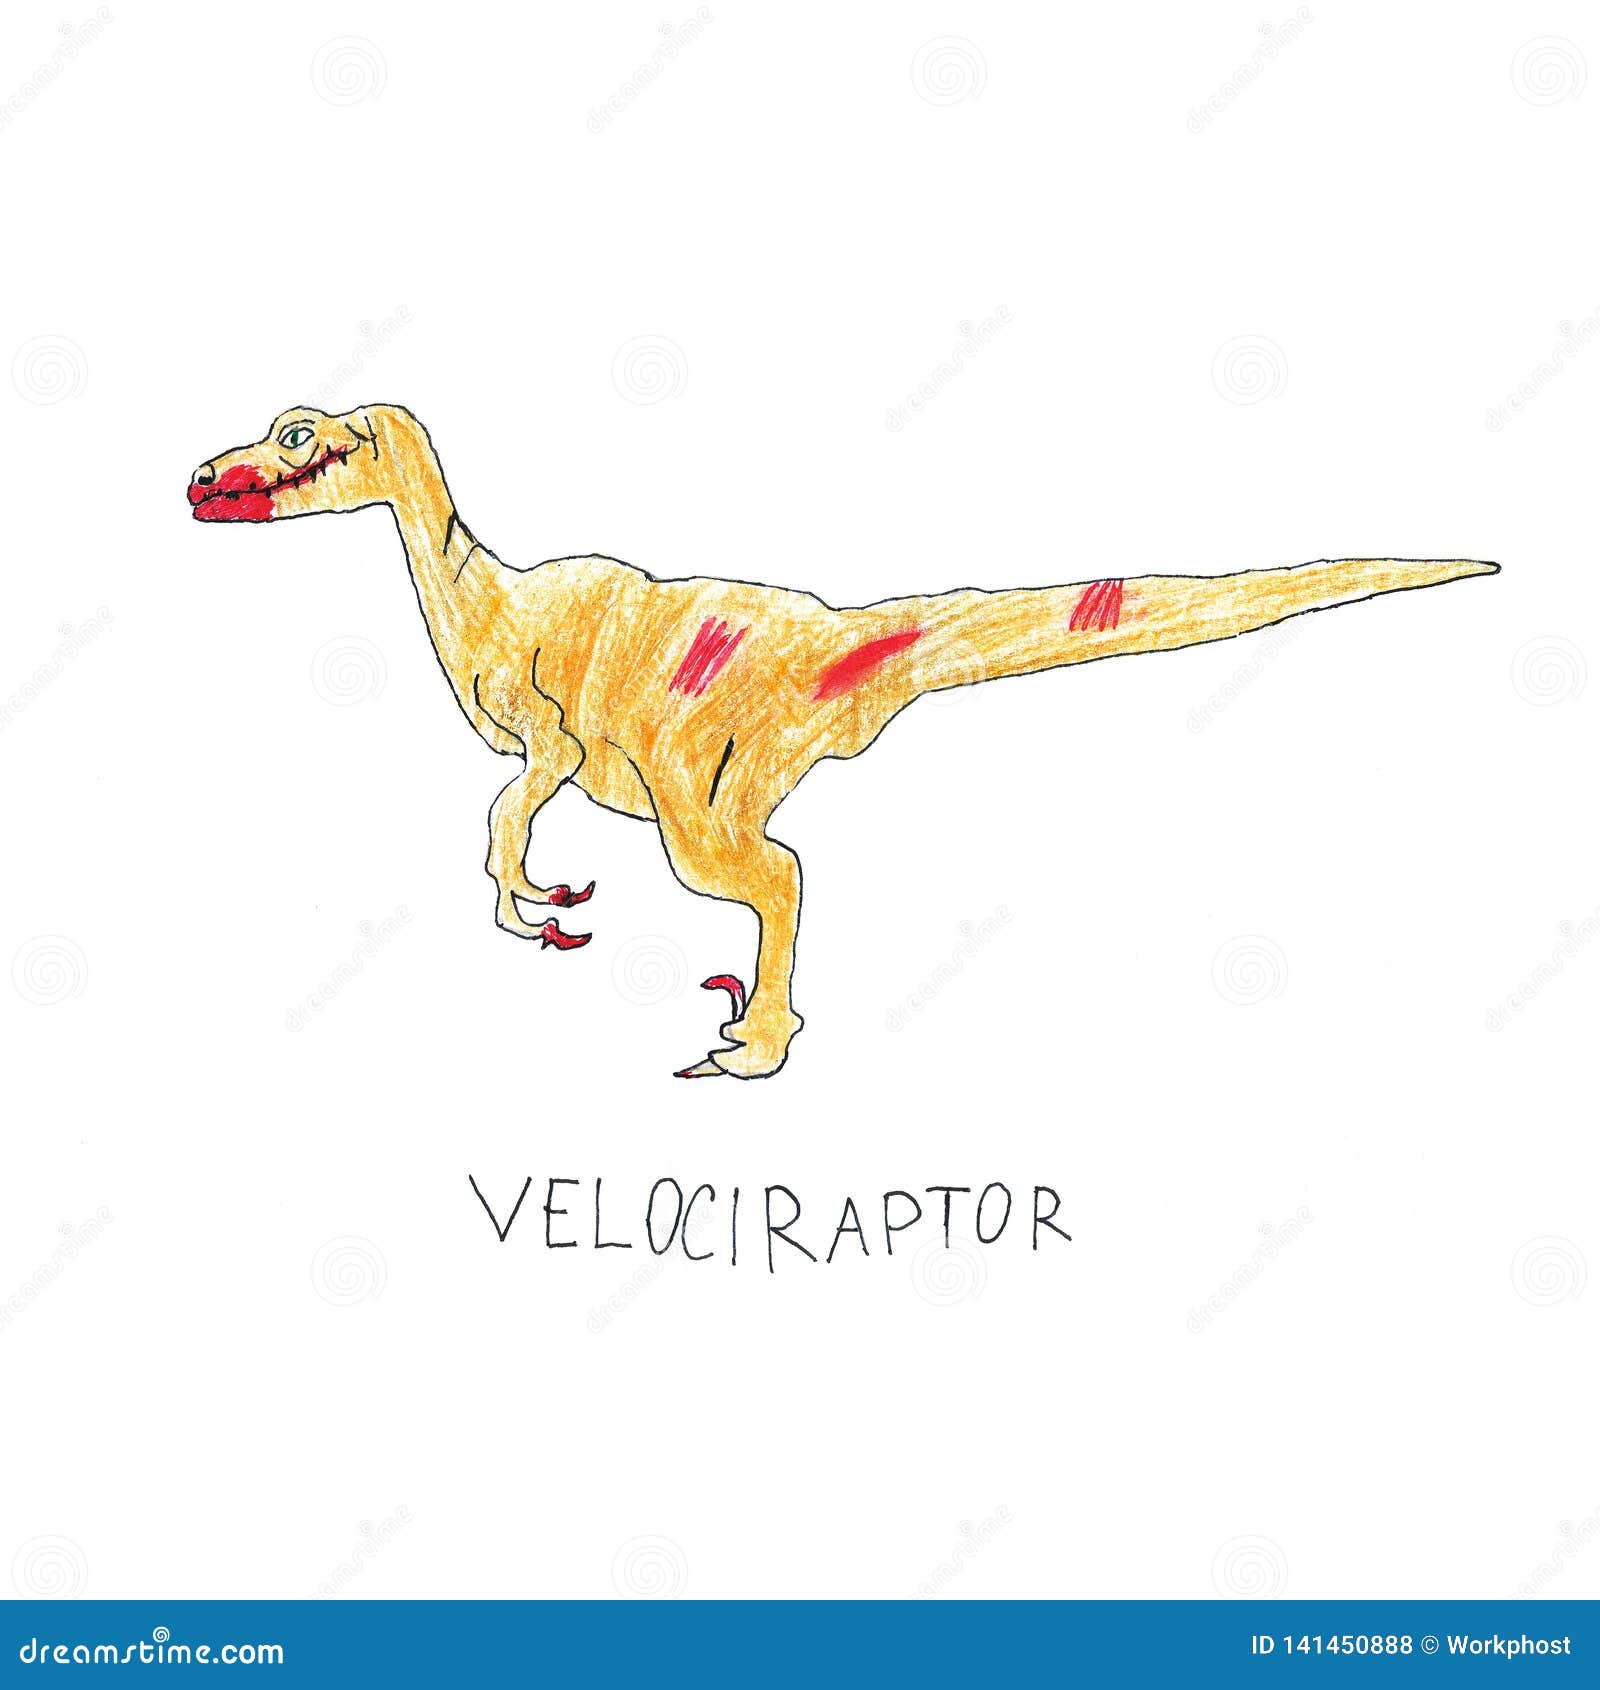 Dibujo Del Velociraptor Del Dinosaurio Ilustración Del Lápiz Para Su Diseño  Stock de ilustración - Ilustración de papel, dino: 141450888